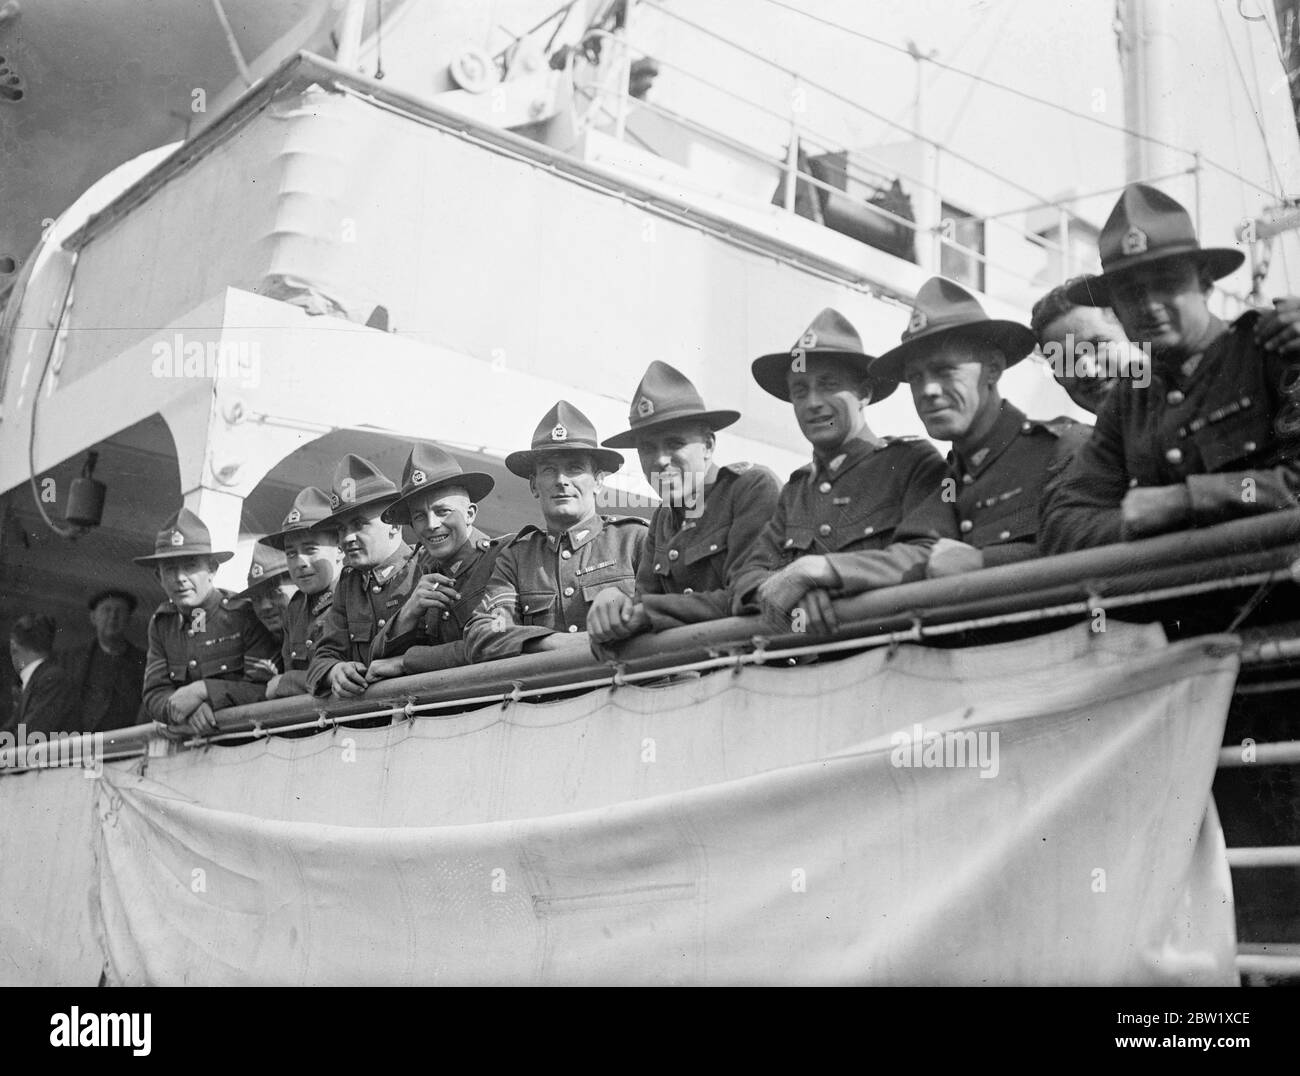 Los neozelandeses se desdicen de Londres. Miembros del contingente de la Coronación de Nueva Zelanda salieron de Londres para regresar a su casa a bordo del Ranigitiki. Ordenando sus arreglos viajaron por carretera desde Pirbright a los muelles reales Albert. Las fotos muestran: Los neozelandeses miran por última vez Londres desde el Ranigitiki. 27 de mayo de 1937 Foto de stock